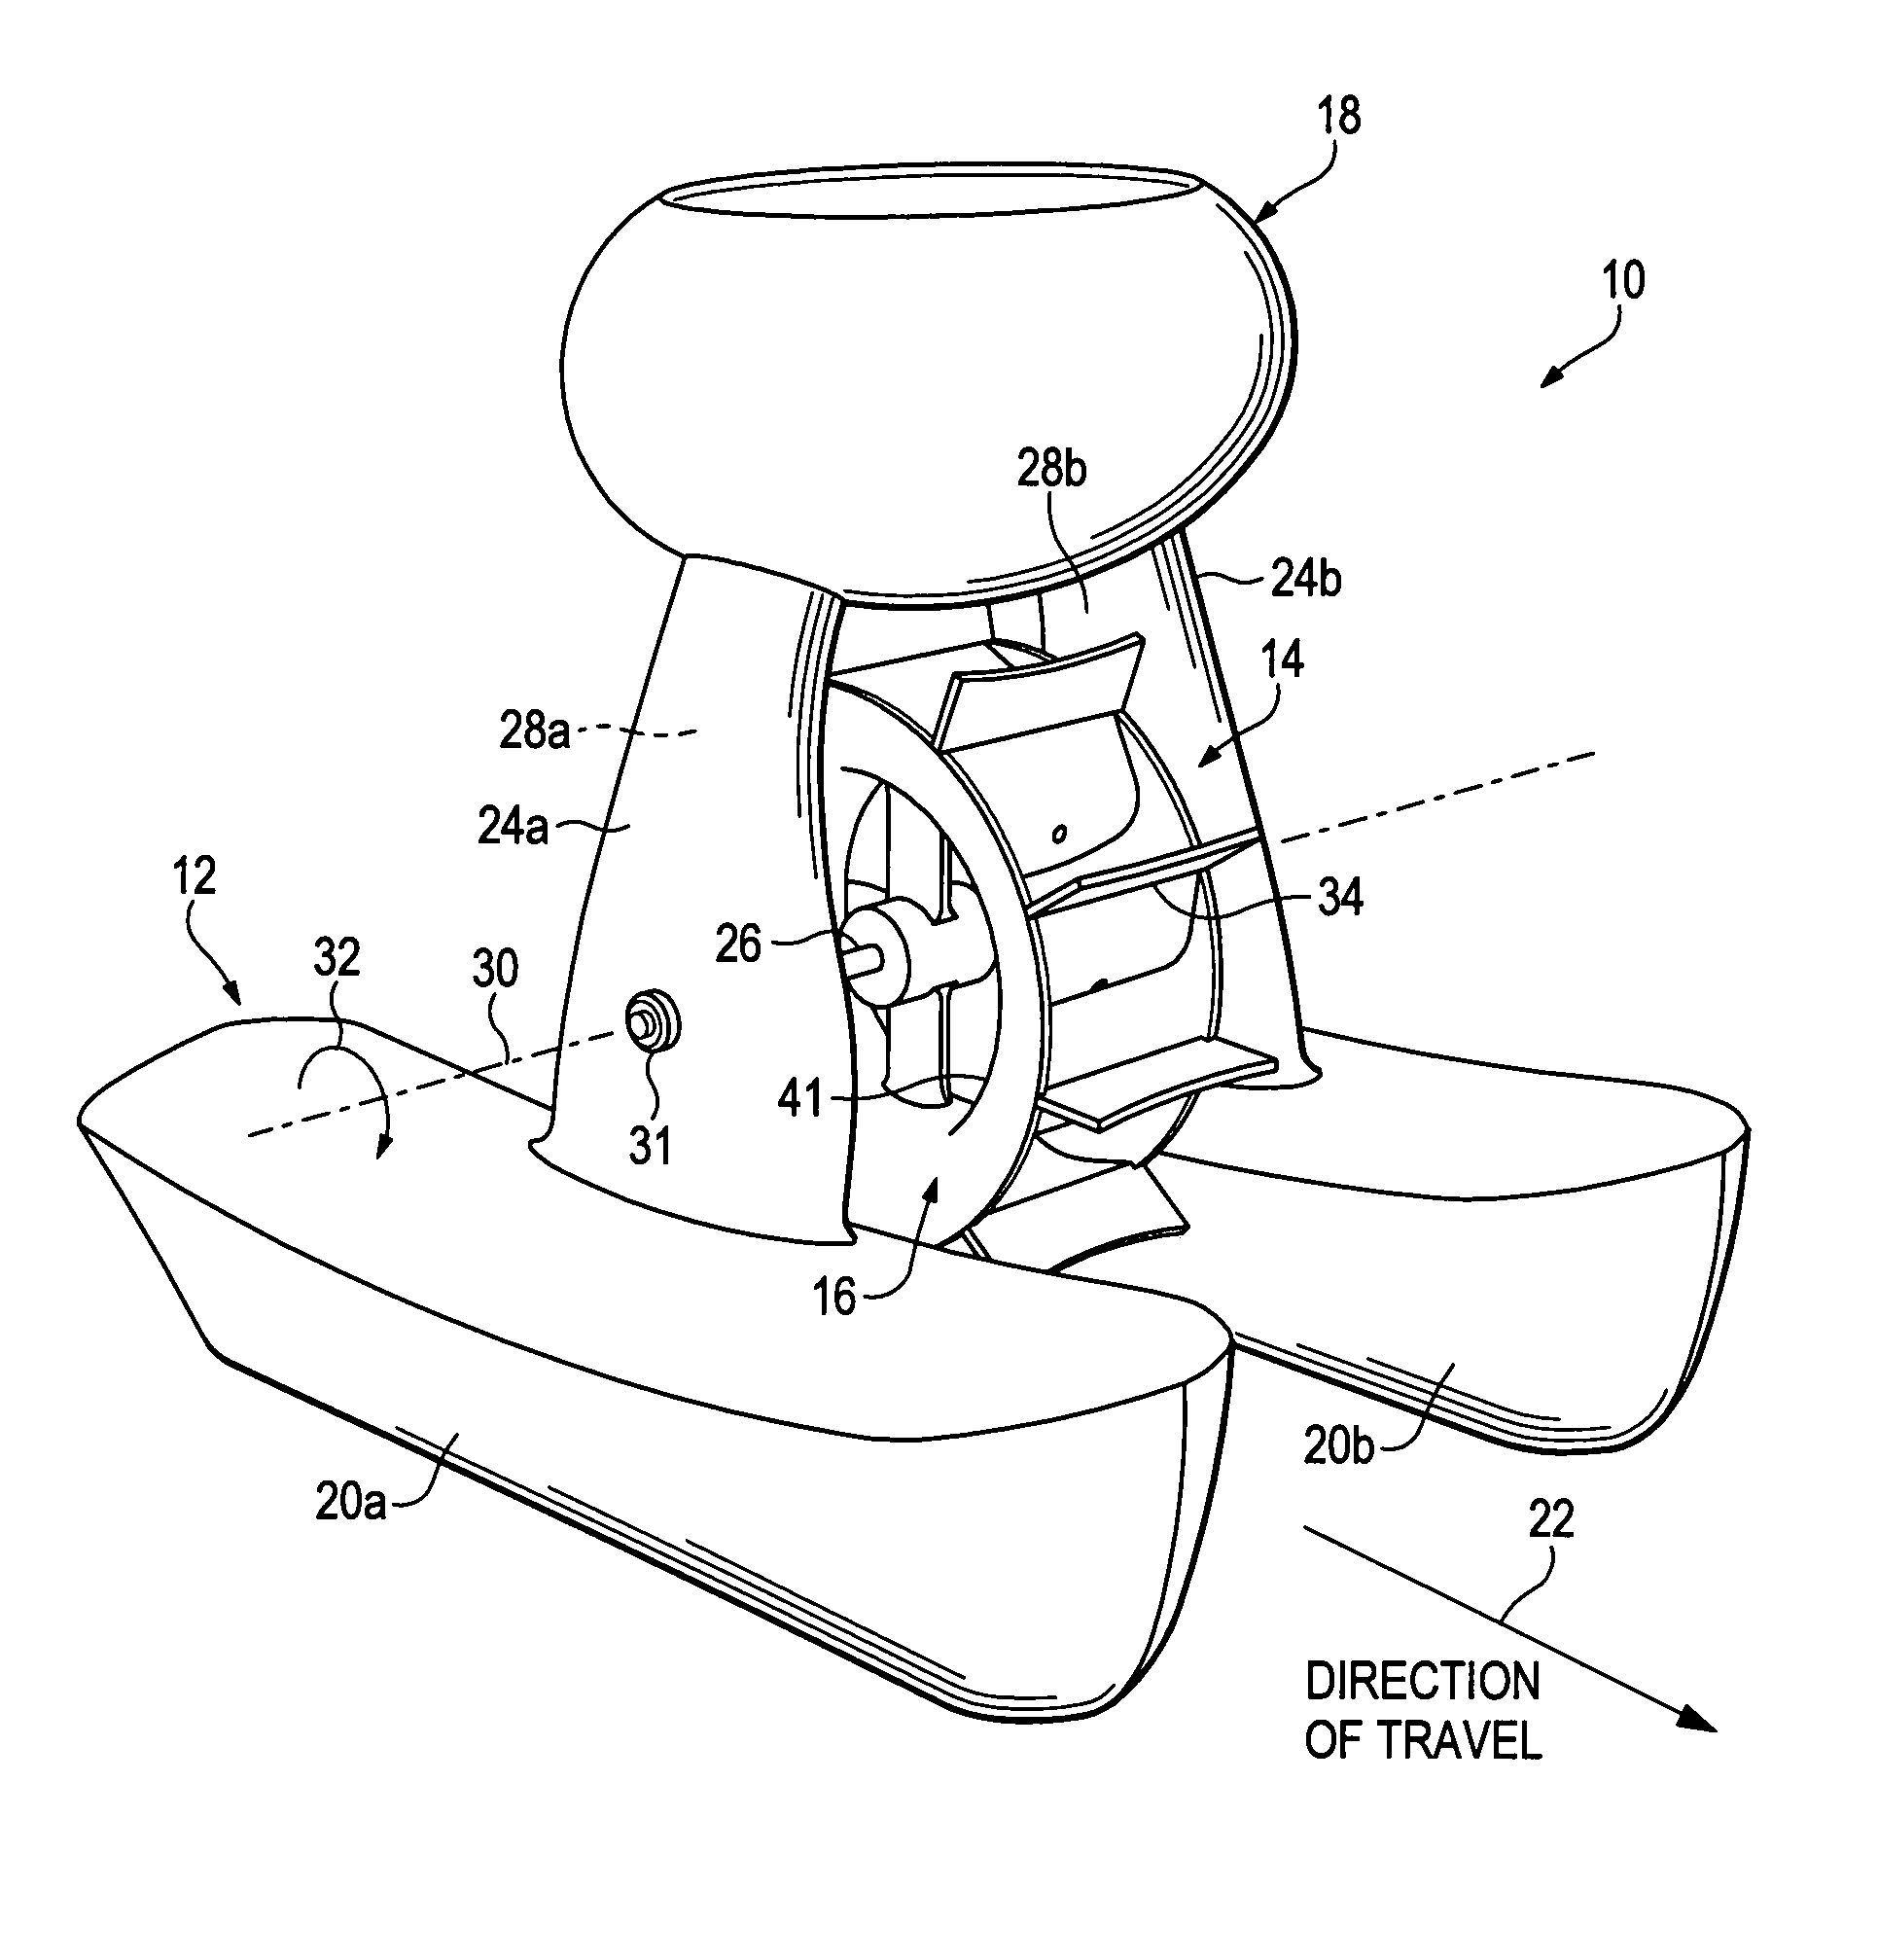 Water vessel using self-propelled water wheel